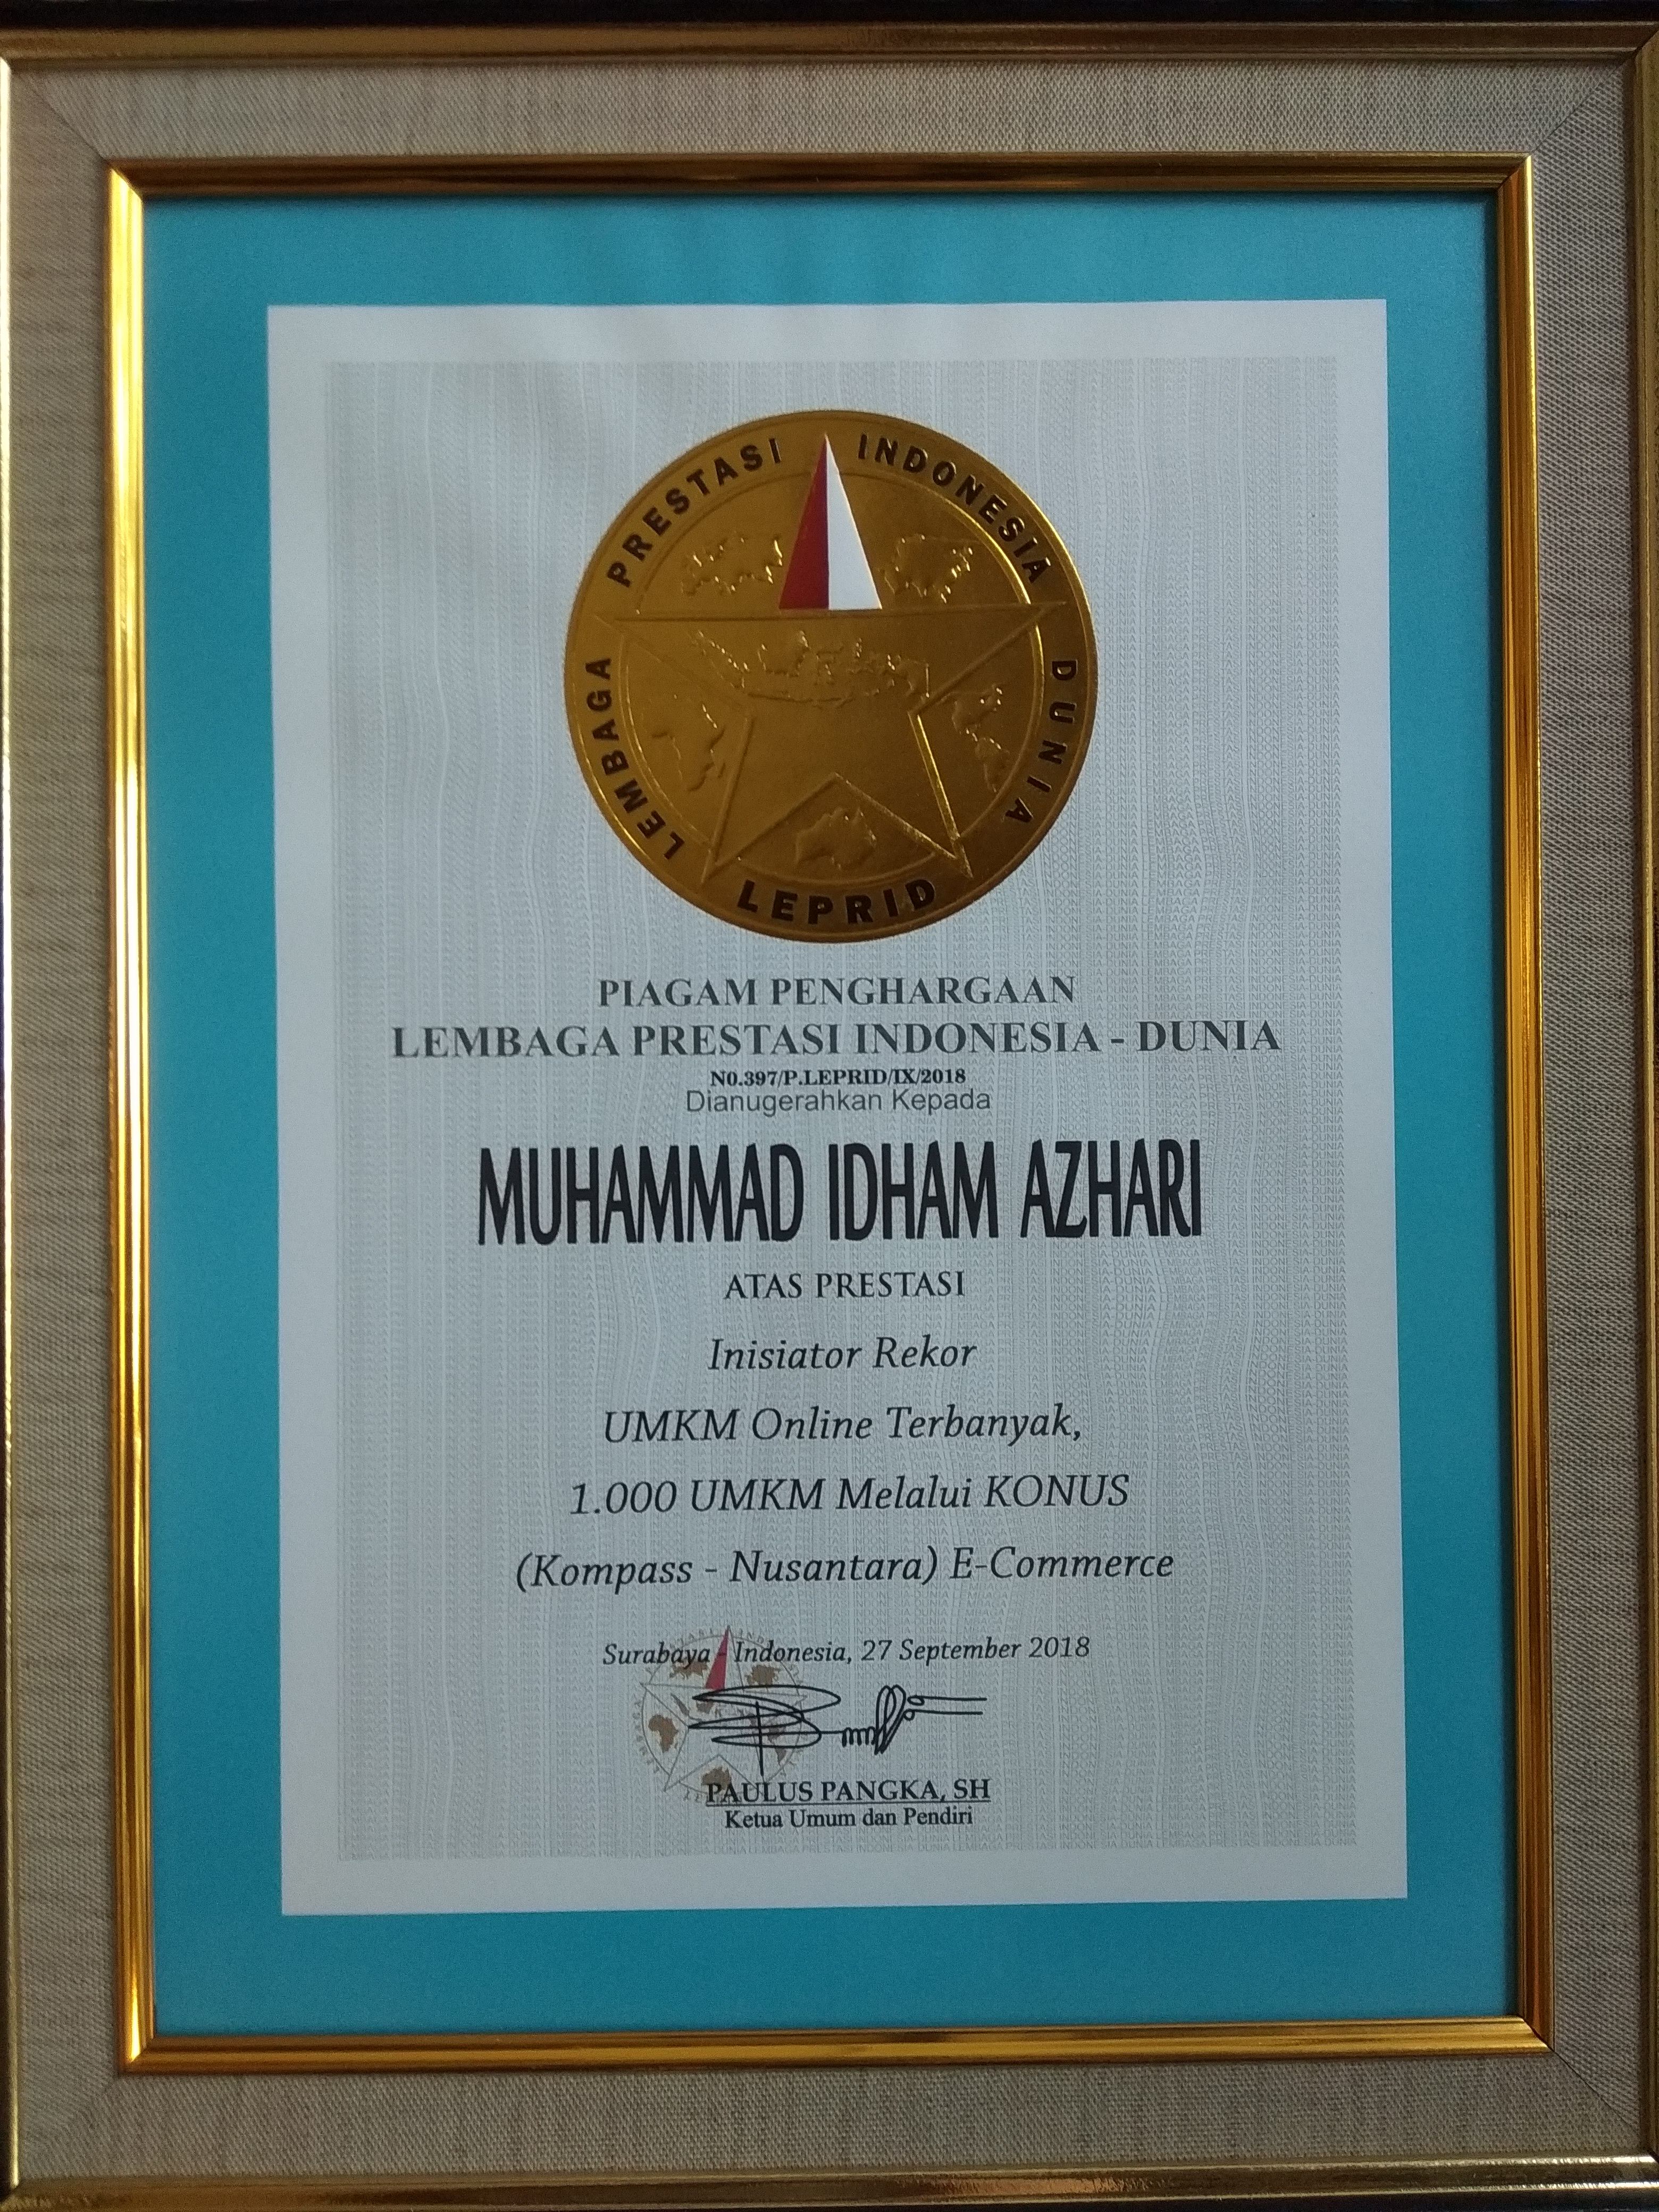 Penghargaan LEPRID Muhammad Idham Azhari